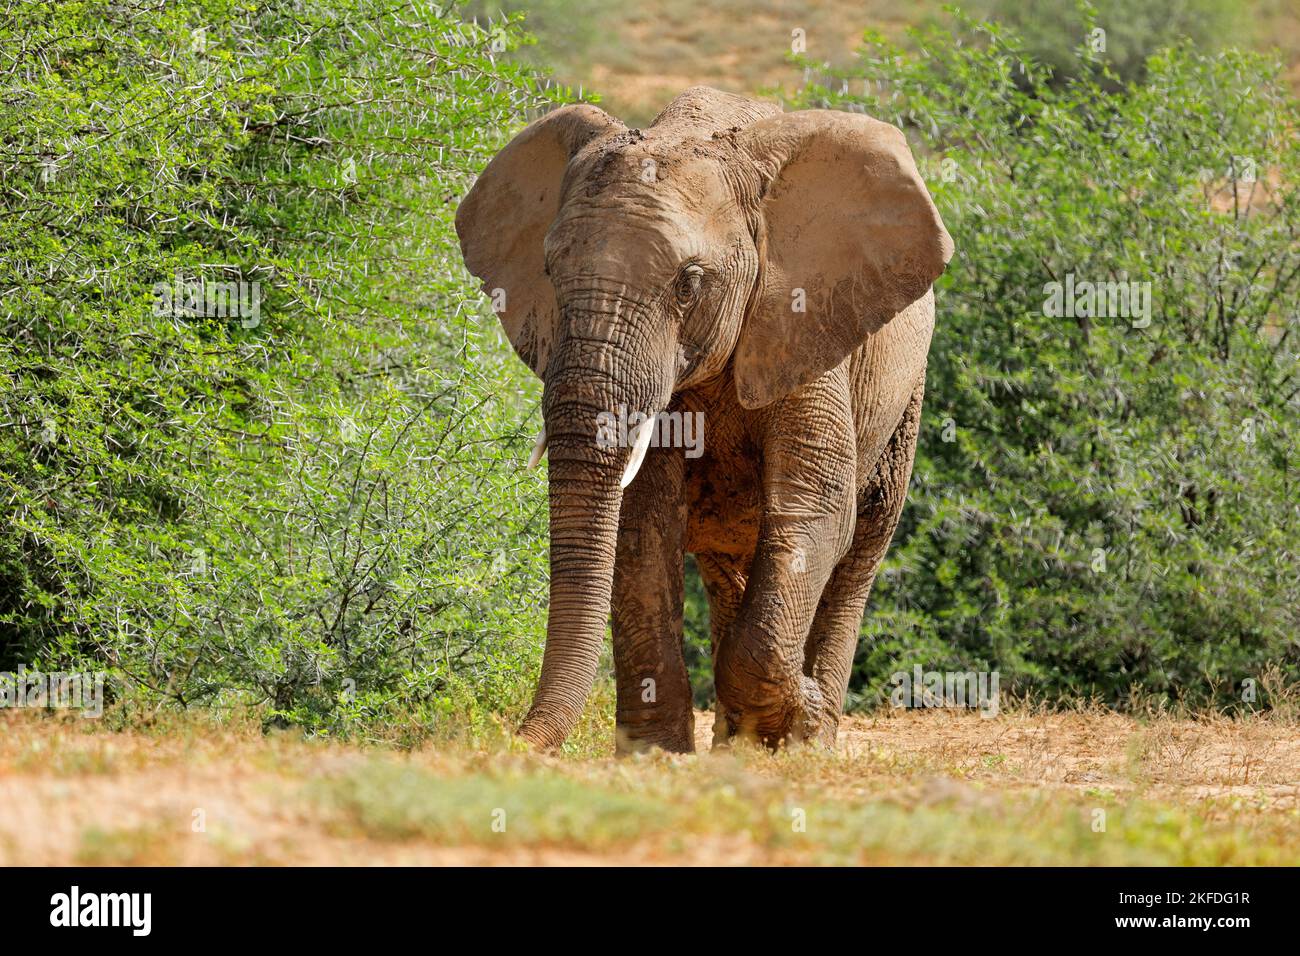 Un grand éléphant d'Afrique (Loxodonta africana) marchant dans son habitat naturel, Parc national de l'éléphant d'Addo, Afrique du Sud Banque D'Images